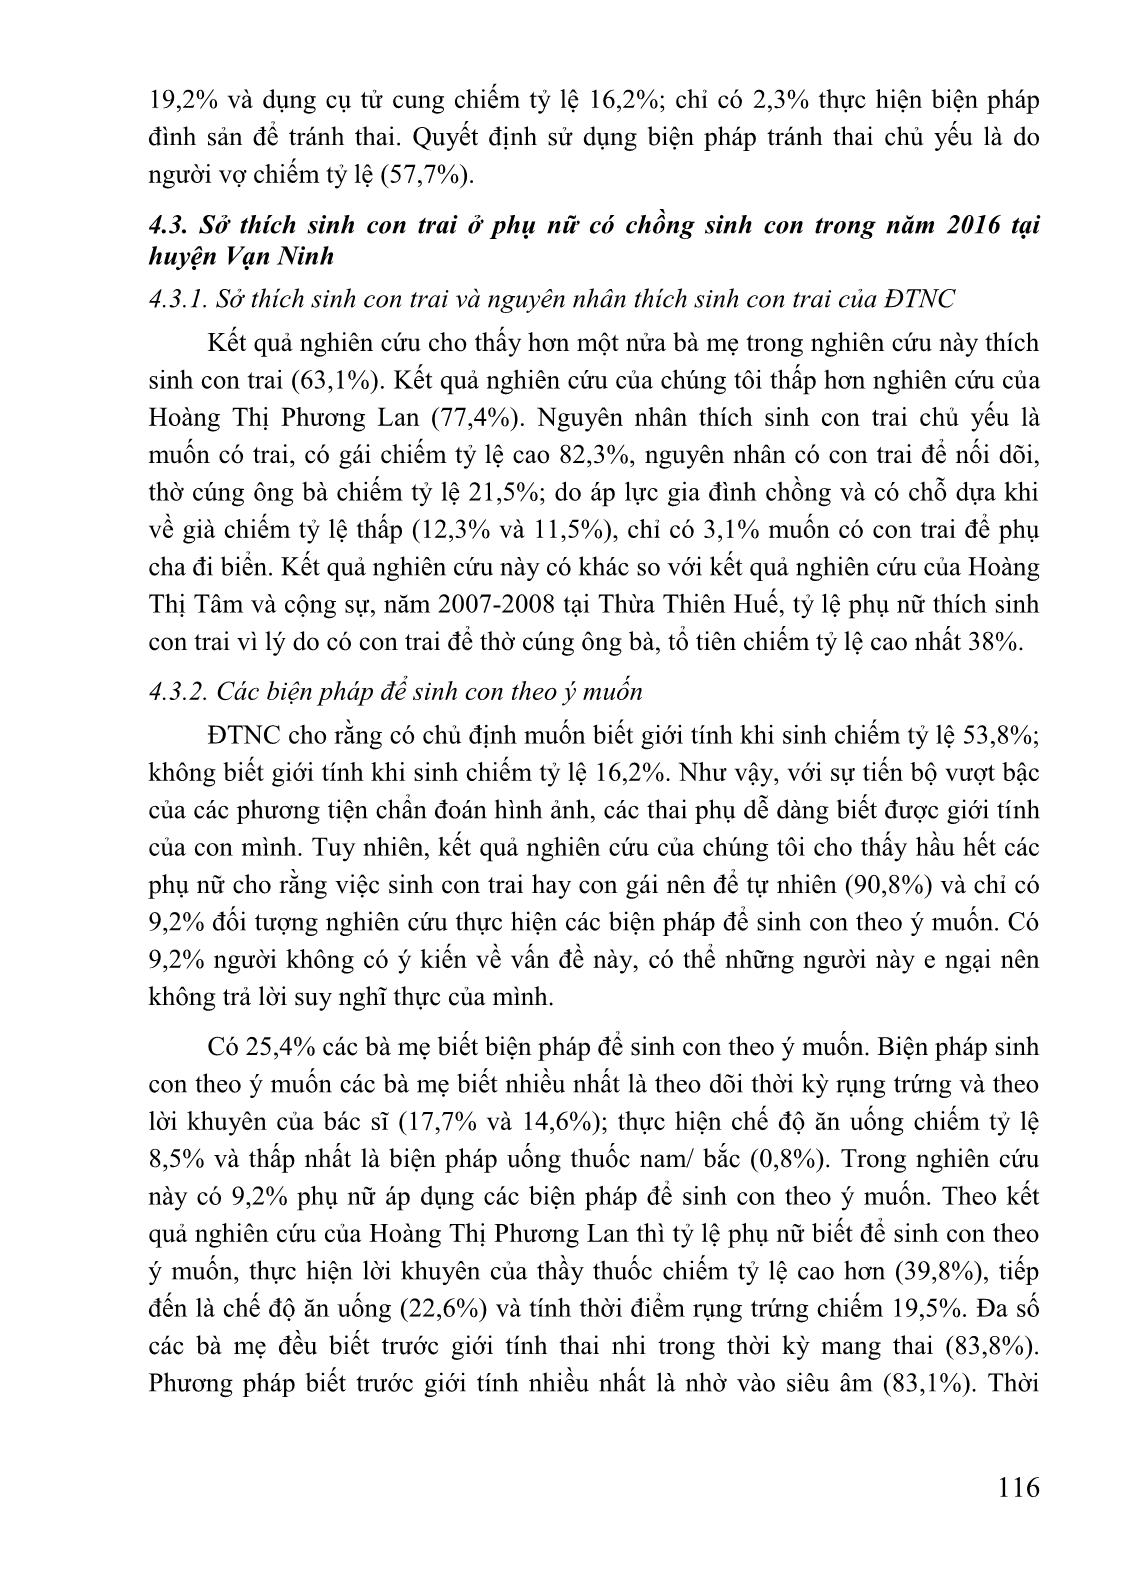 Nghiên cứu tỷ số giới tính khi sinh và các yếu tố liên quan đến sở thích sinh con trai ở phụ nữ có chồng tại huyện Vạn Ninh - tỉnh Khánh Hòa, năm 2016 trang 5